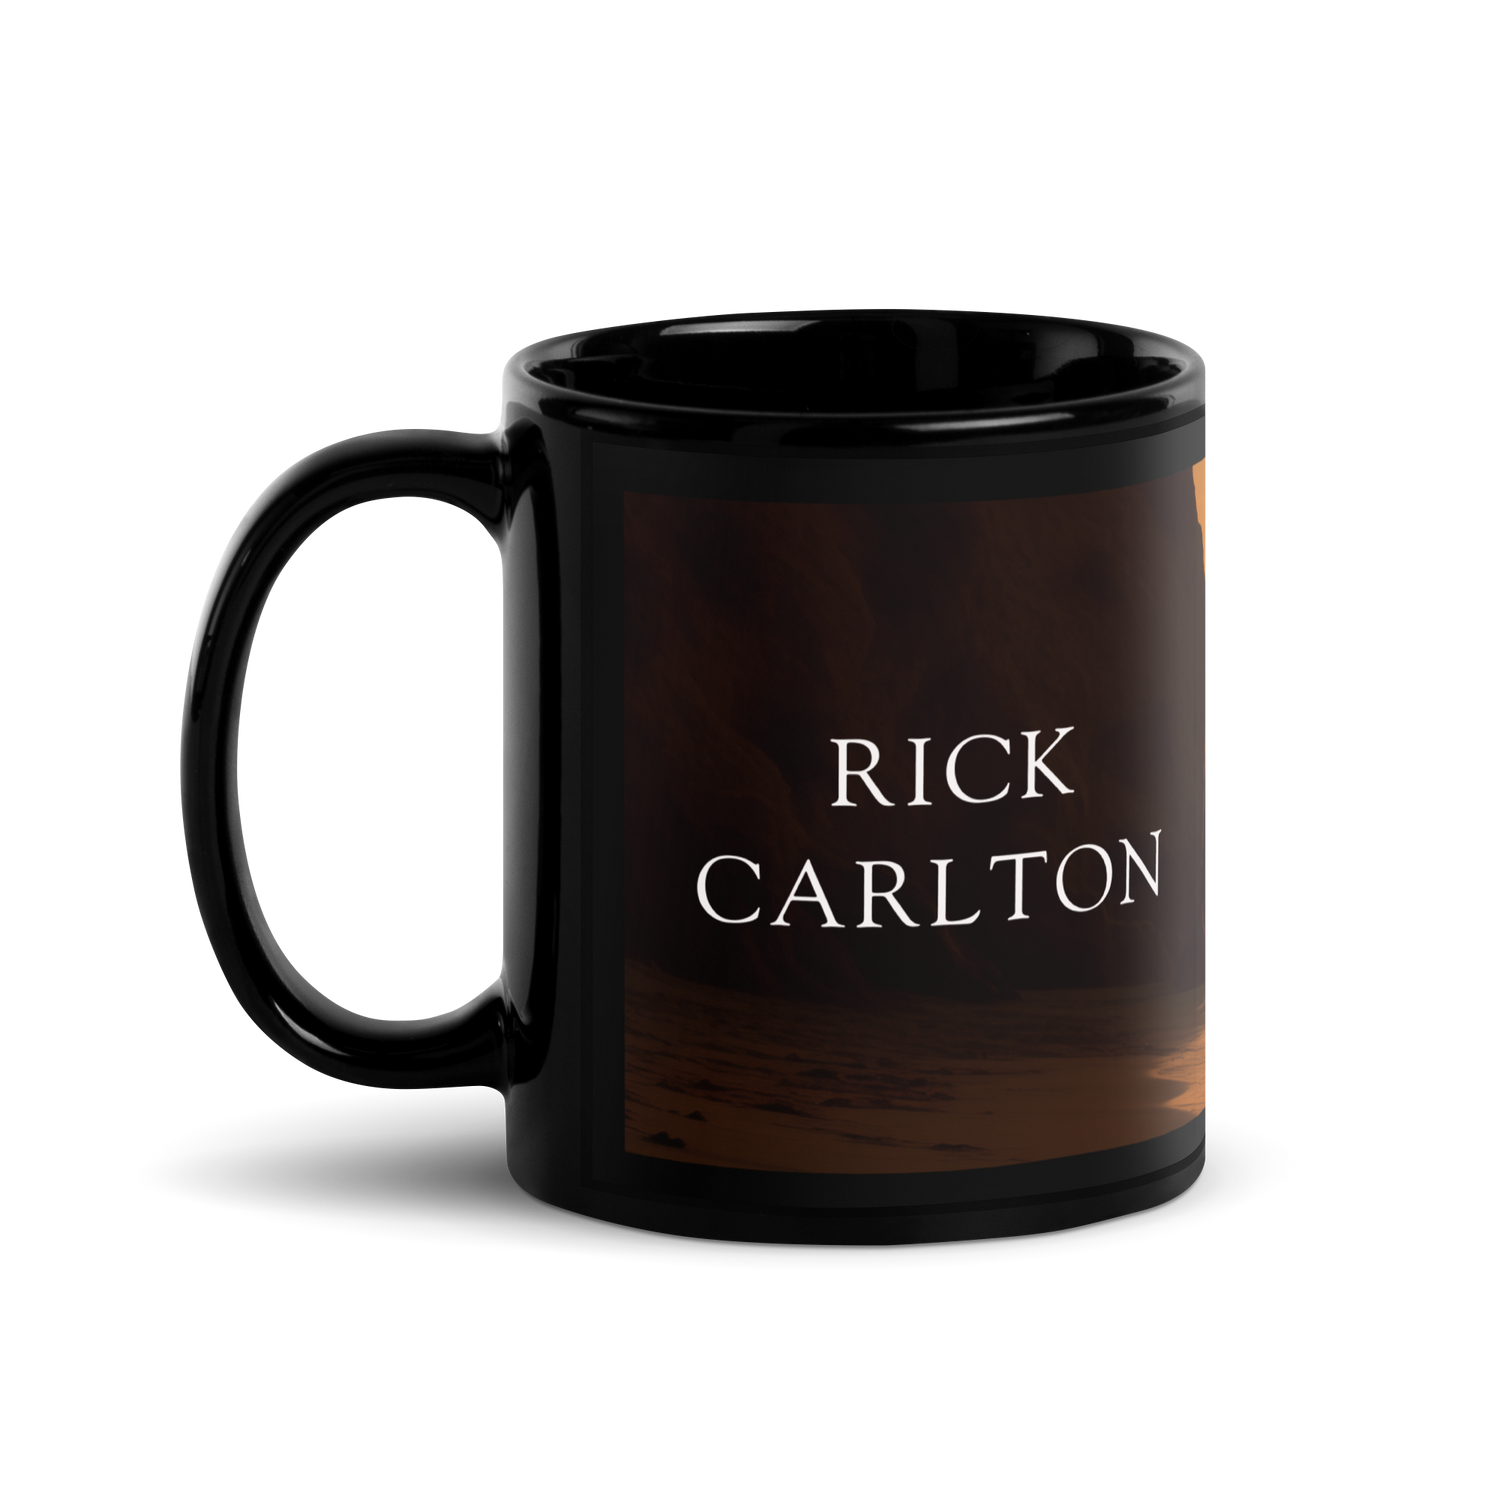 Rick Carlton Mug